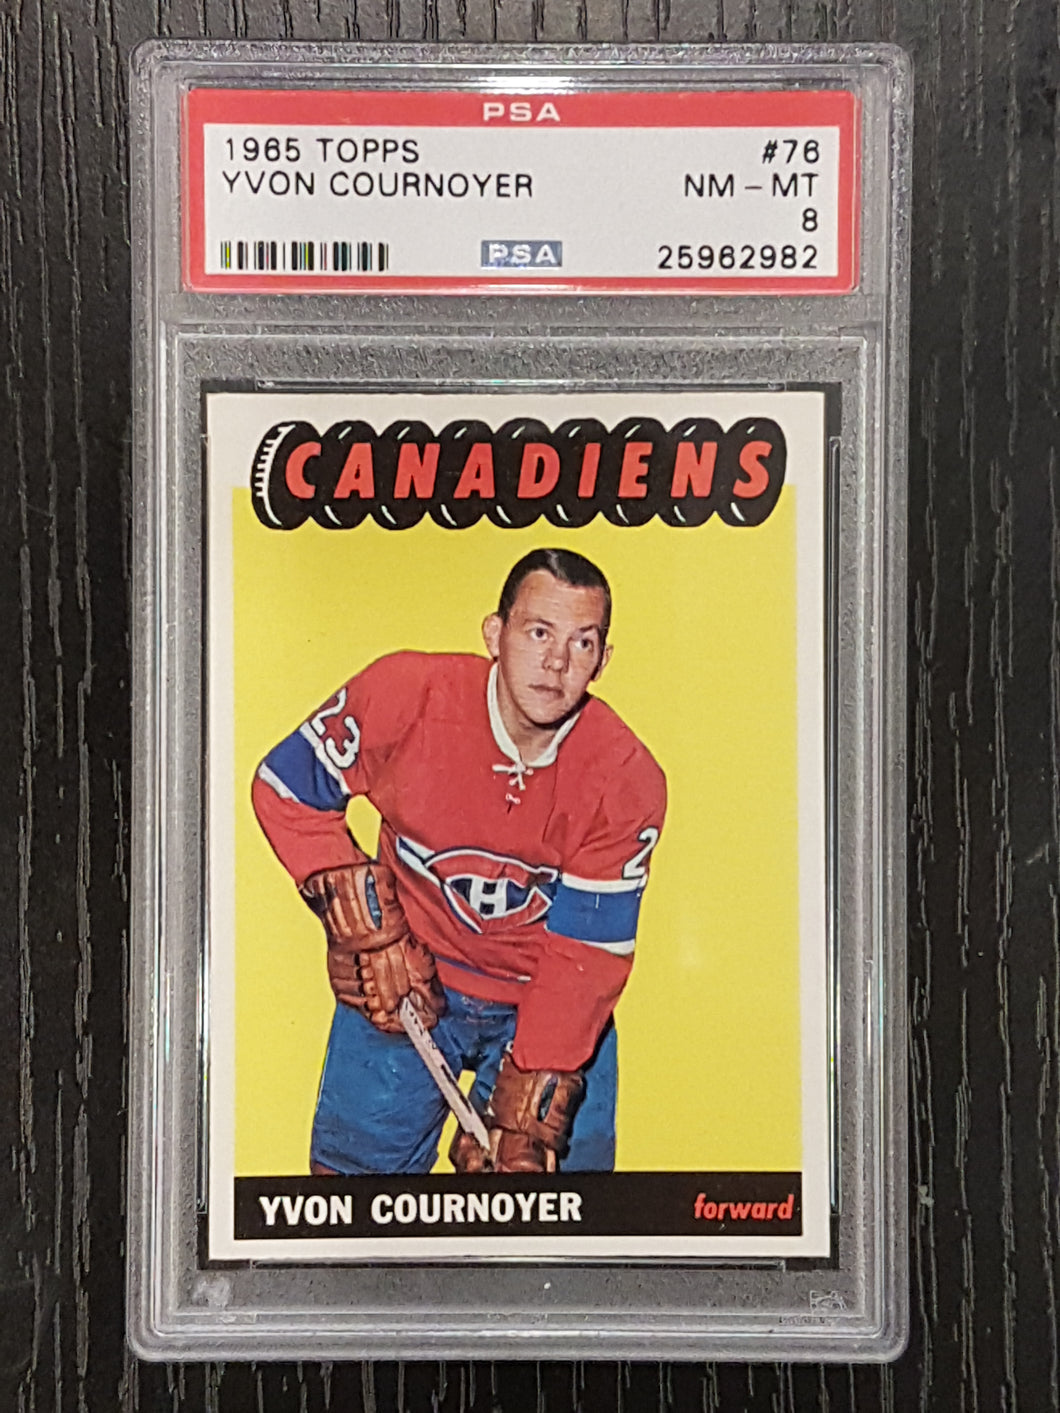 1965-66 Topps Hockey Card Set (PSA, SGC, KSA) Graded and Raw Cards.